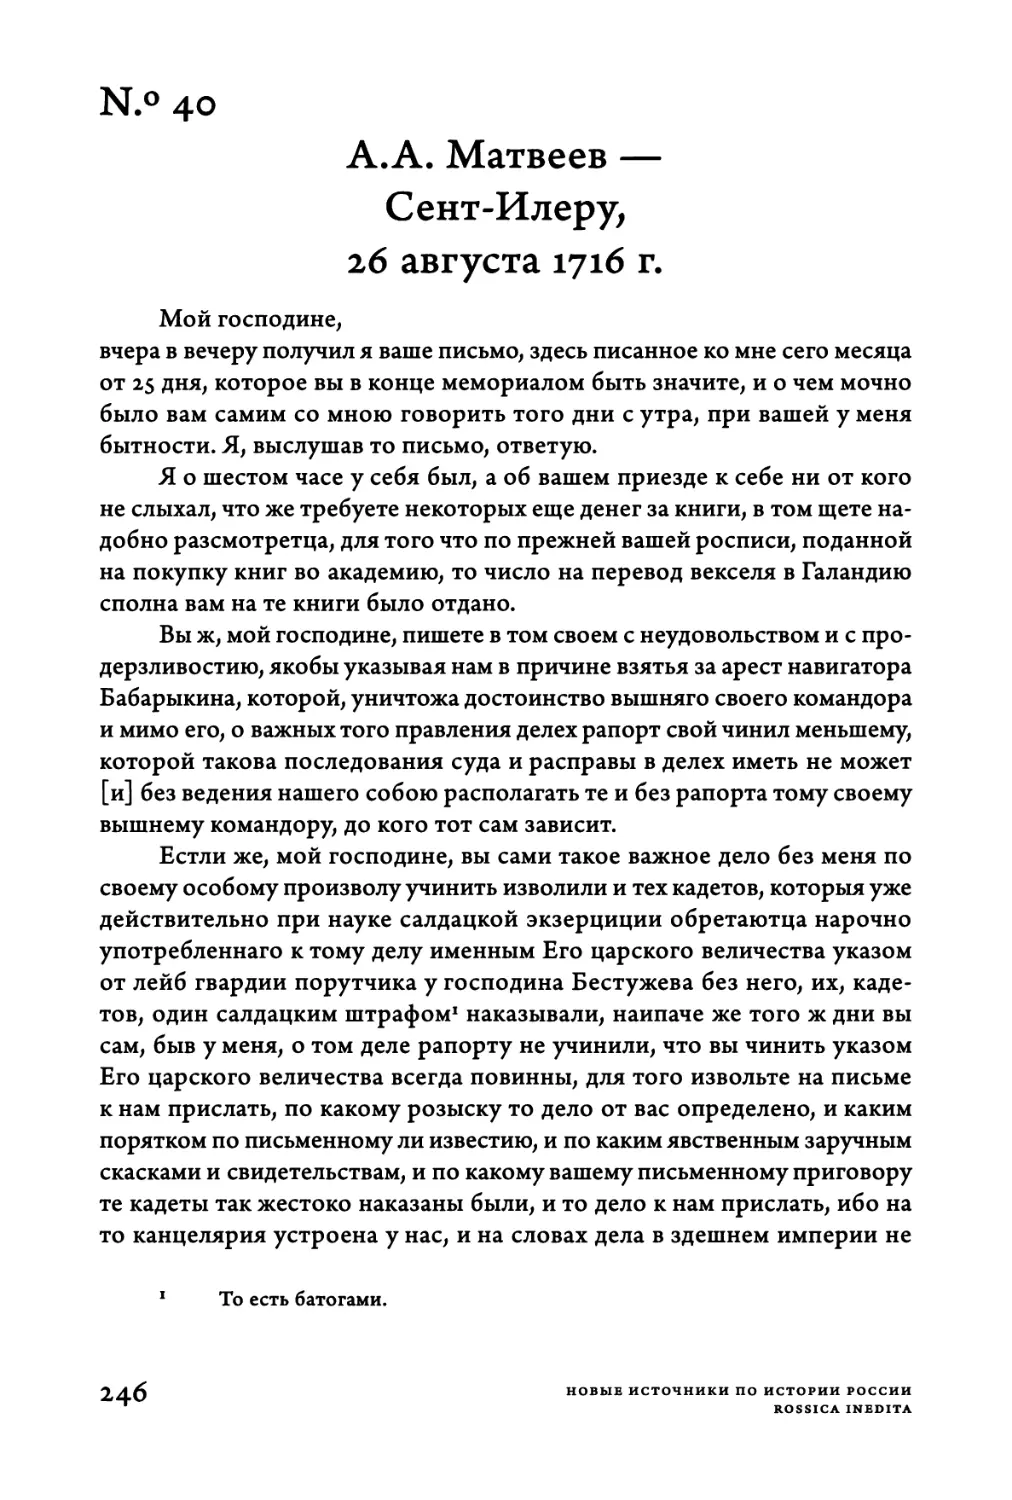 Ν.°40. A.A. Матвеев — Сент-Илеру, 26 августа 1716 г.